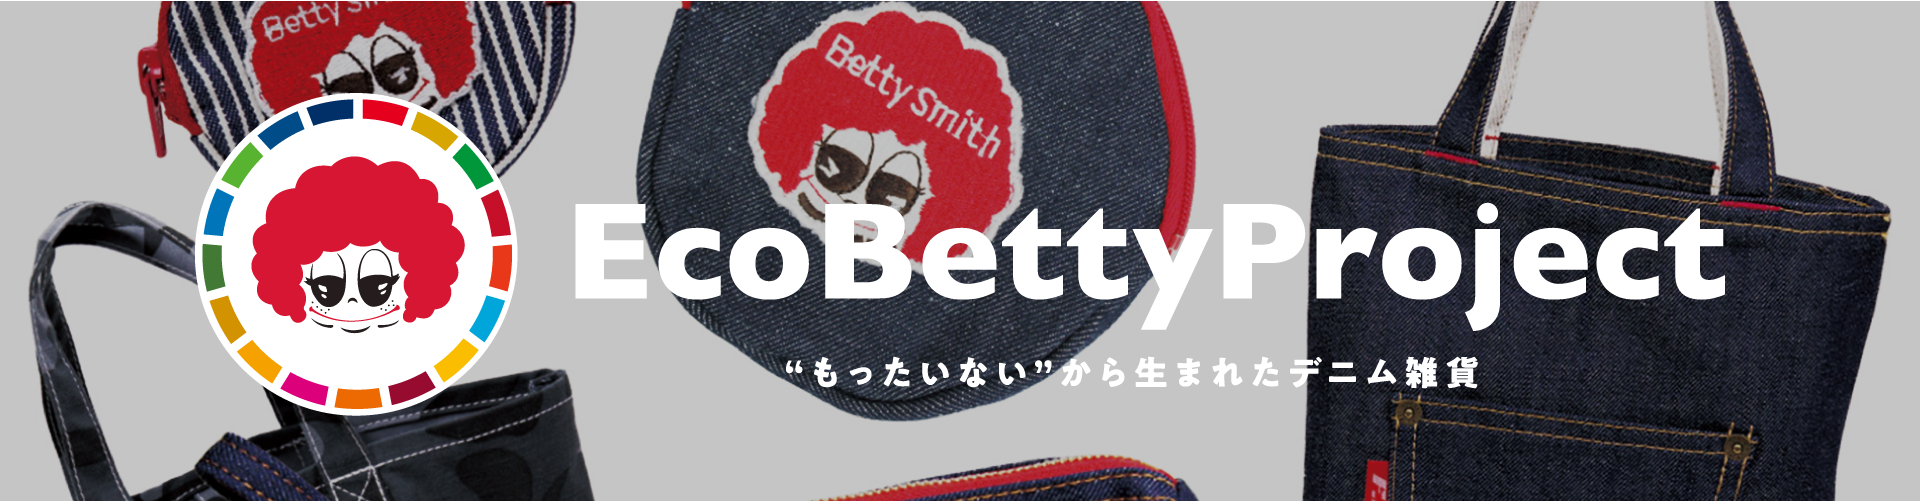 Eco Betty Project　「もったいない」から生まれたデニム雑貨